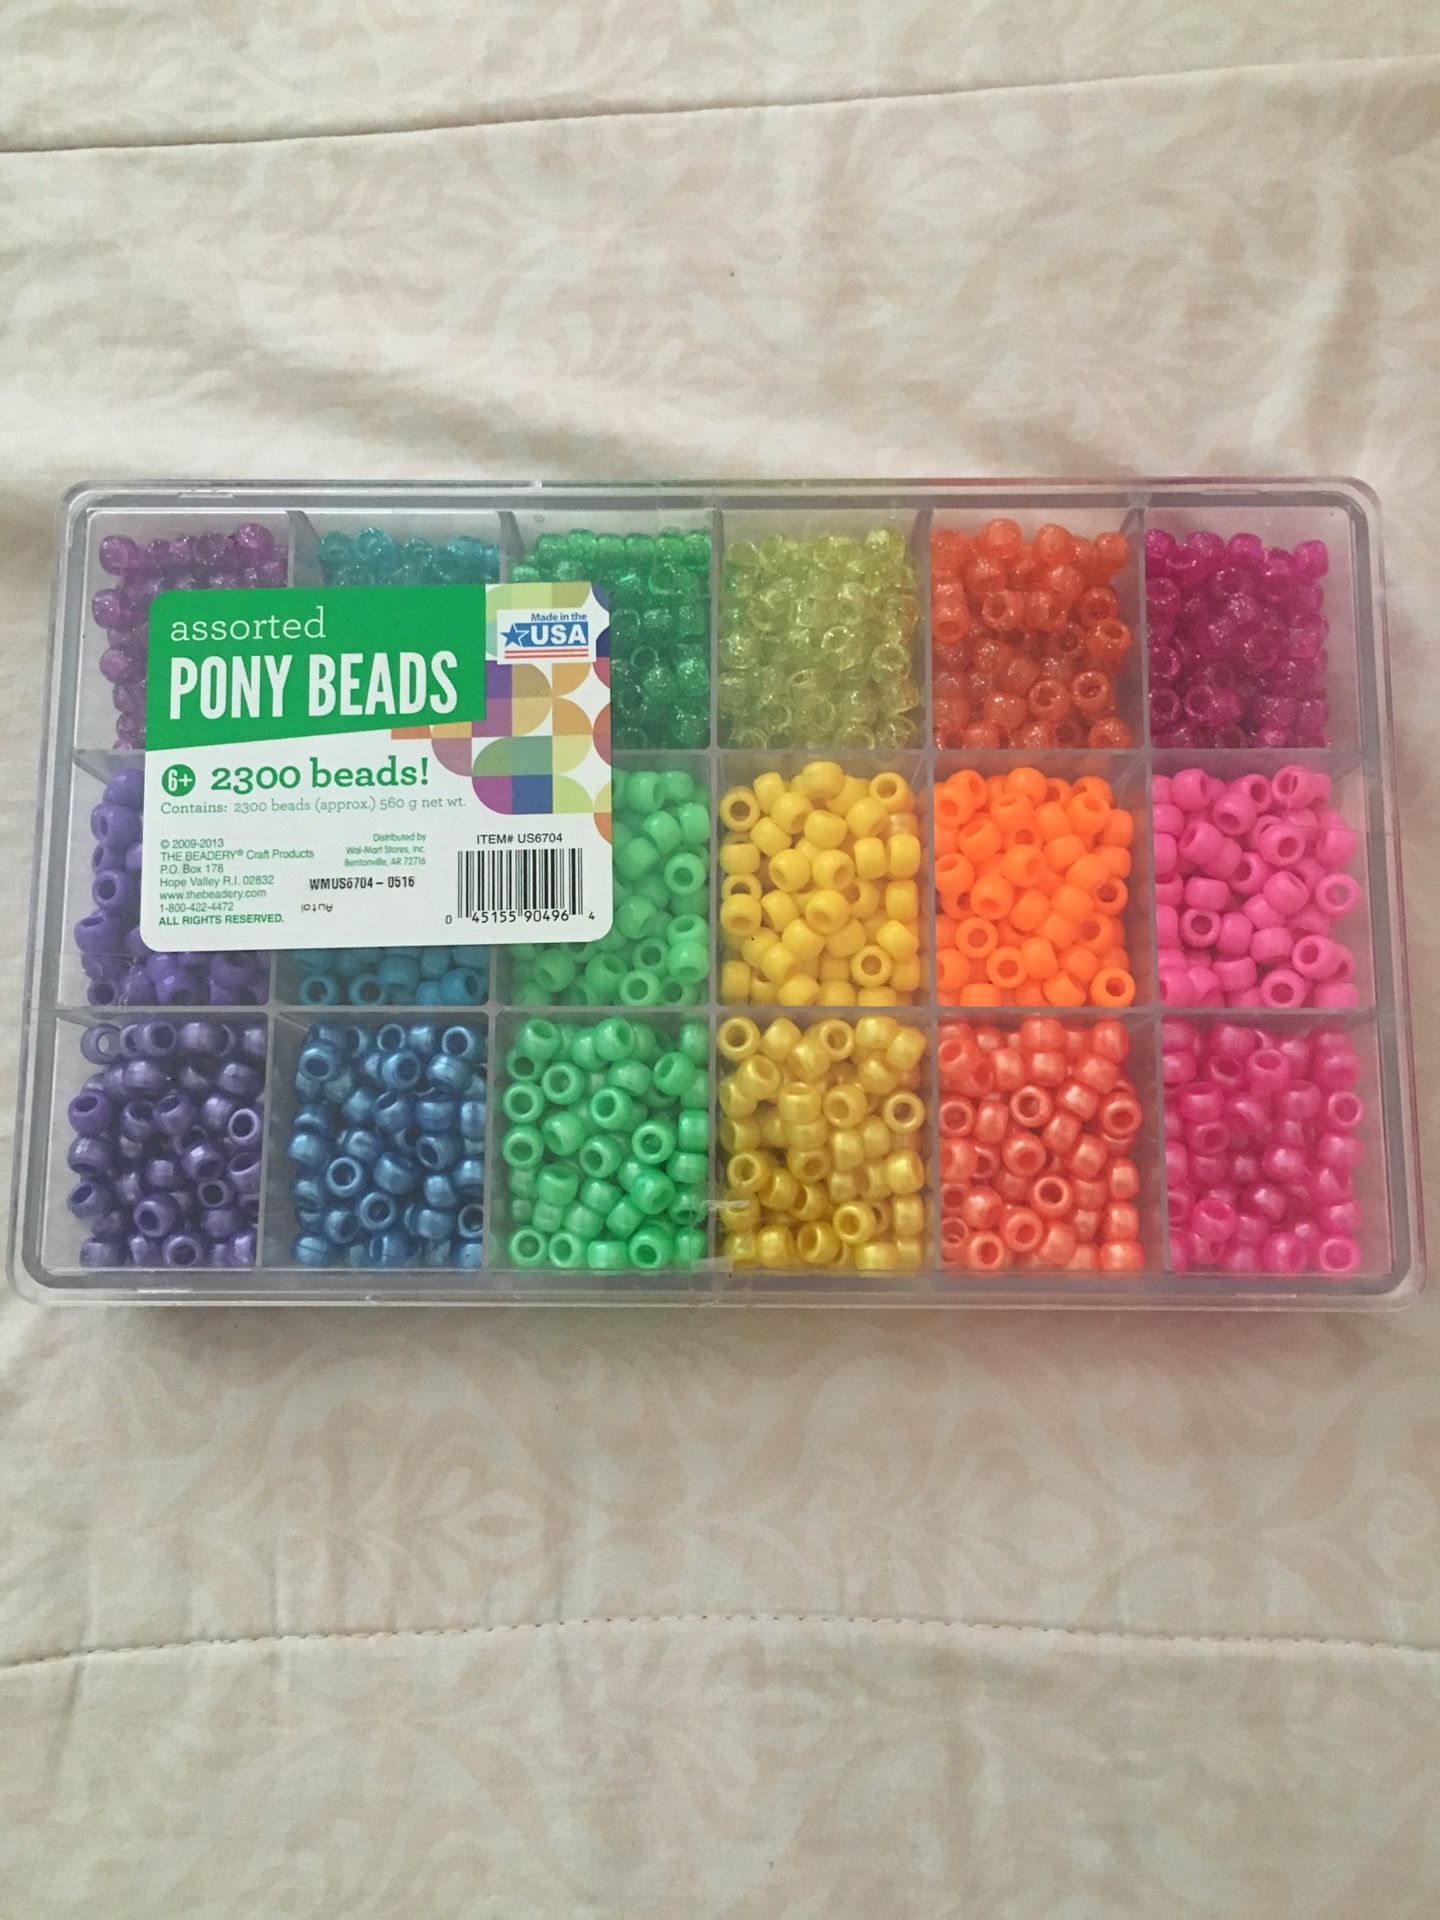 New box of beads